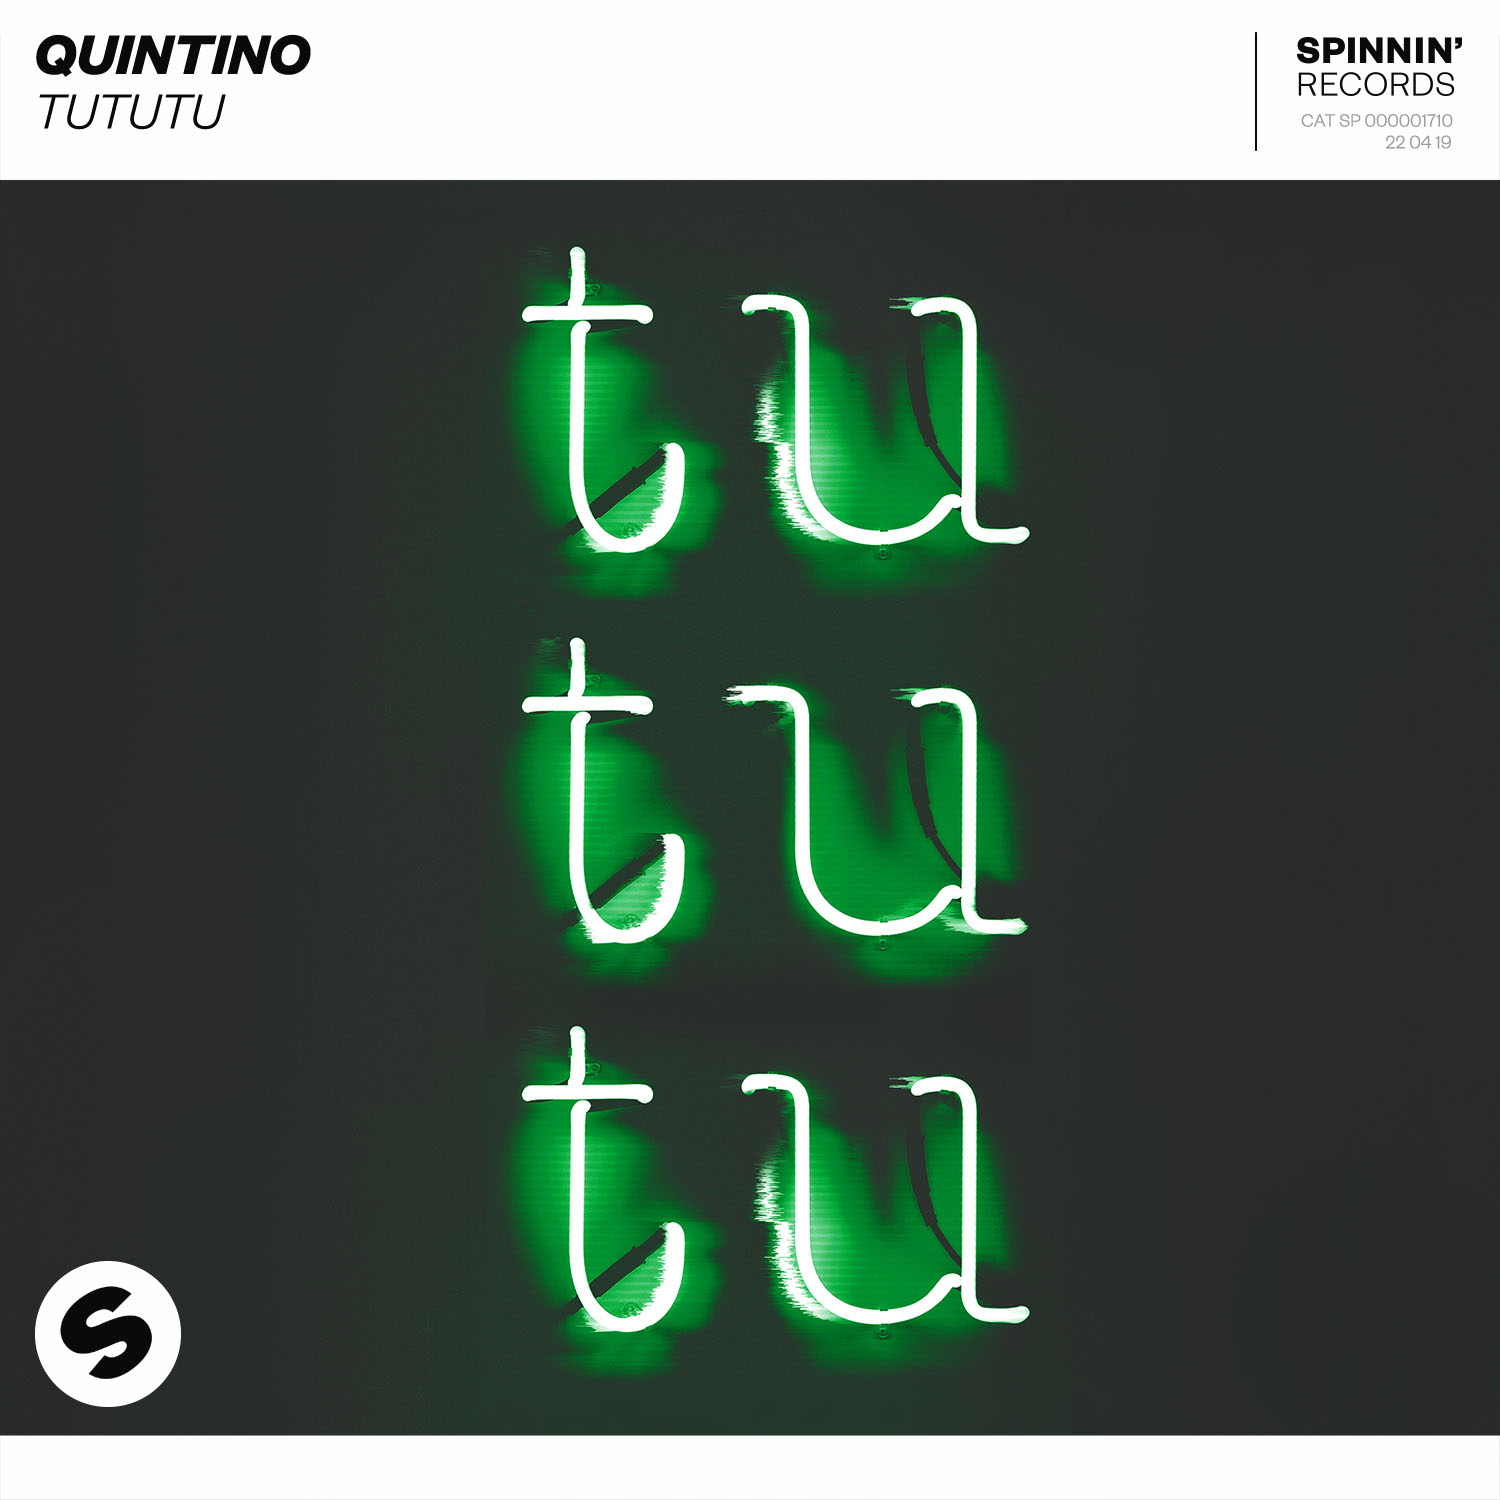 Quintino — TUTUTU cover artwork